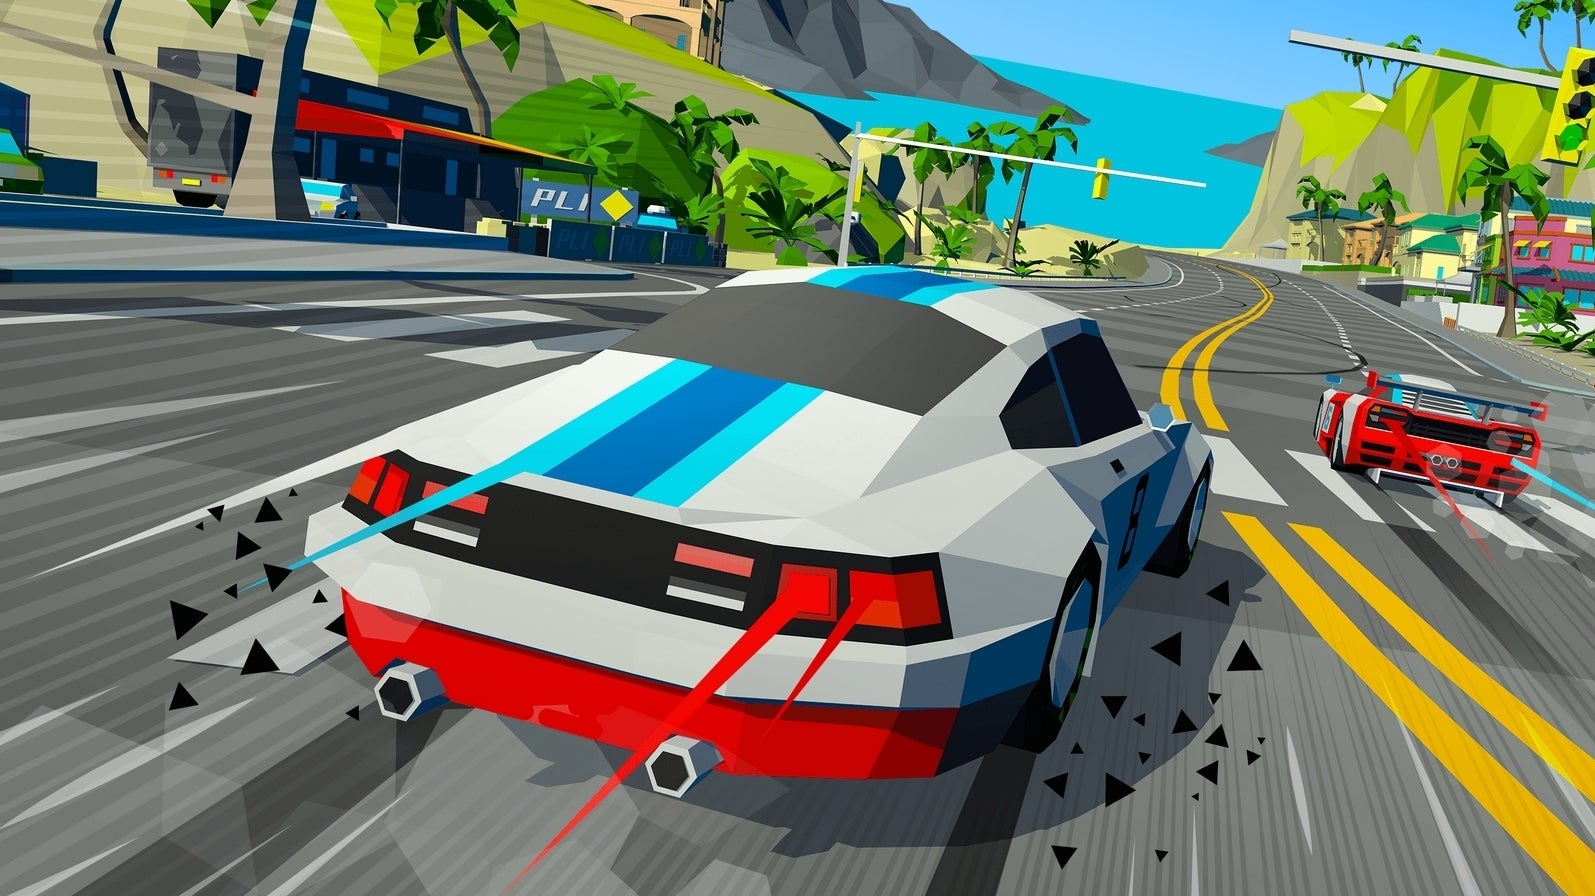 Bilder zu Hotshot Racing vereint Arcade-Gameplay mit Retro-Feeling zu etwas Wunderbarem